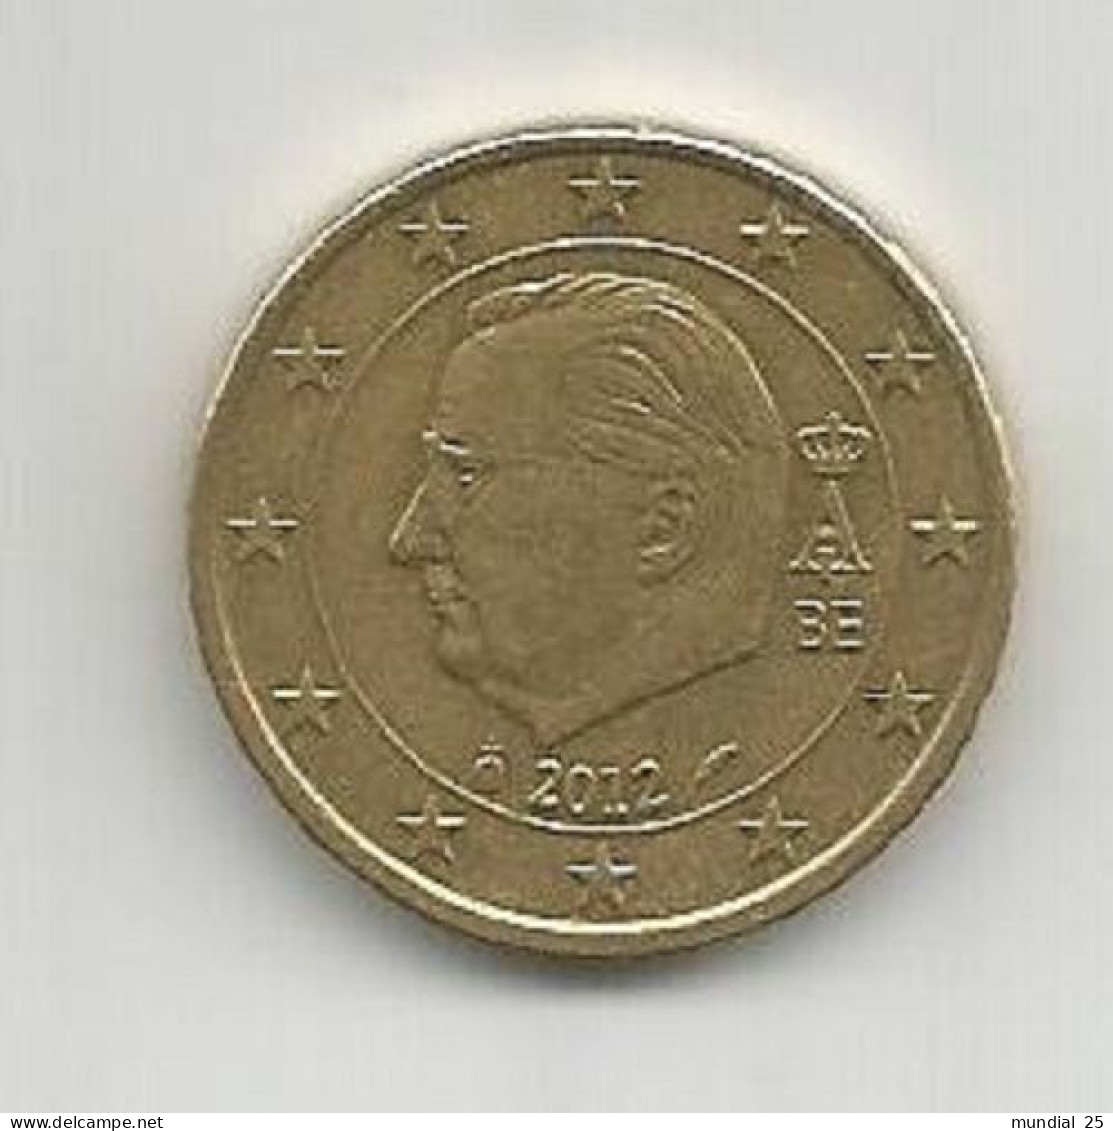 BELGIUM 50 EURO CENT 2012 - Belgio